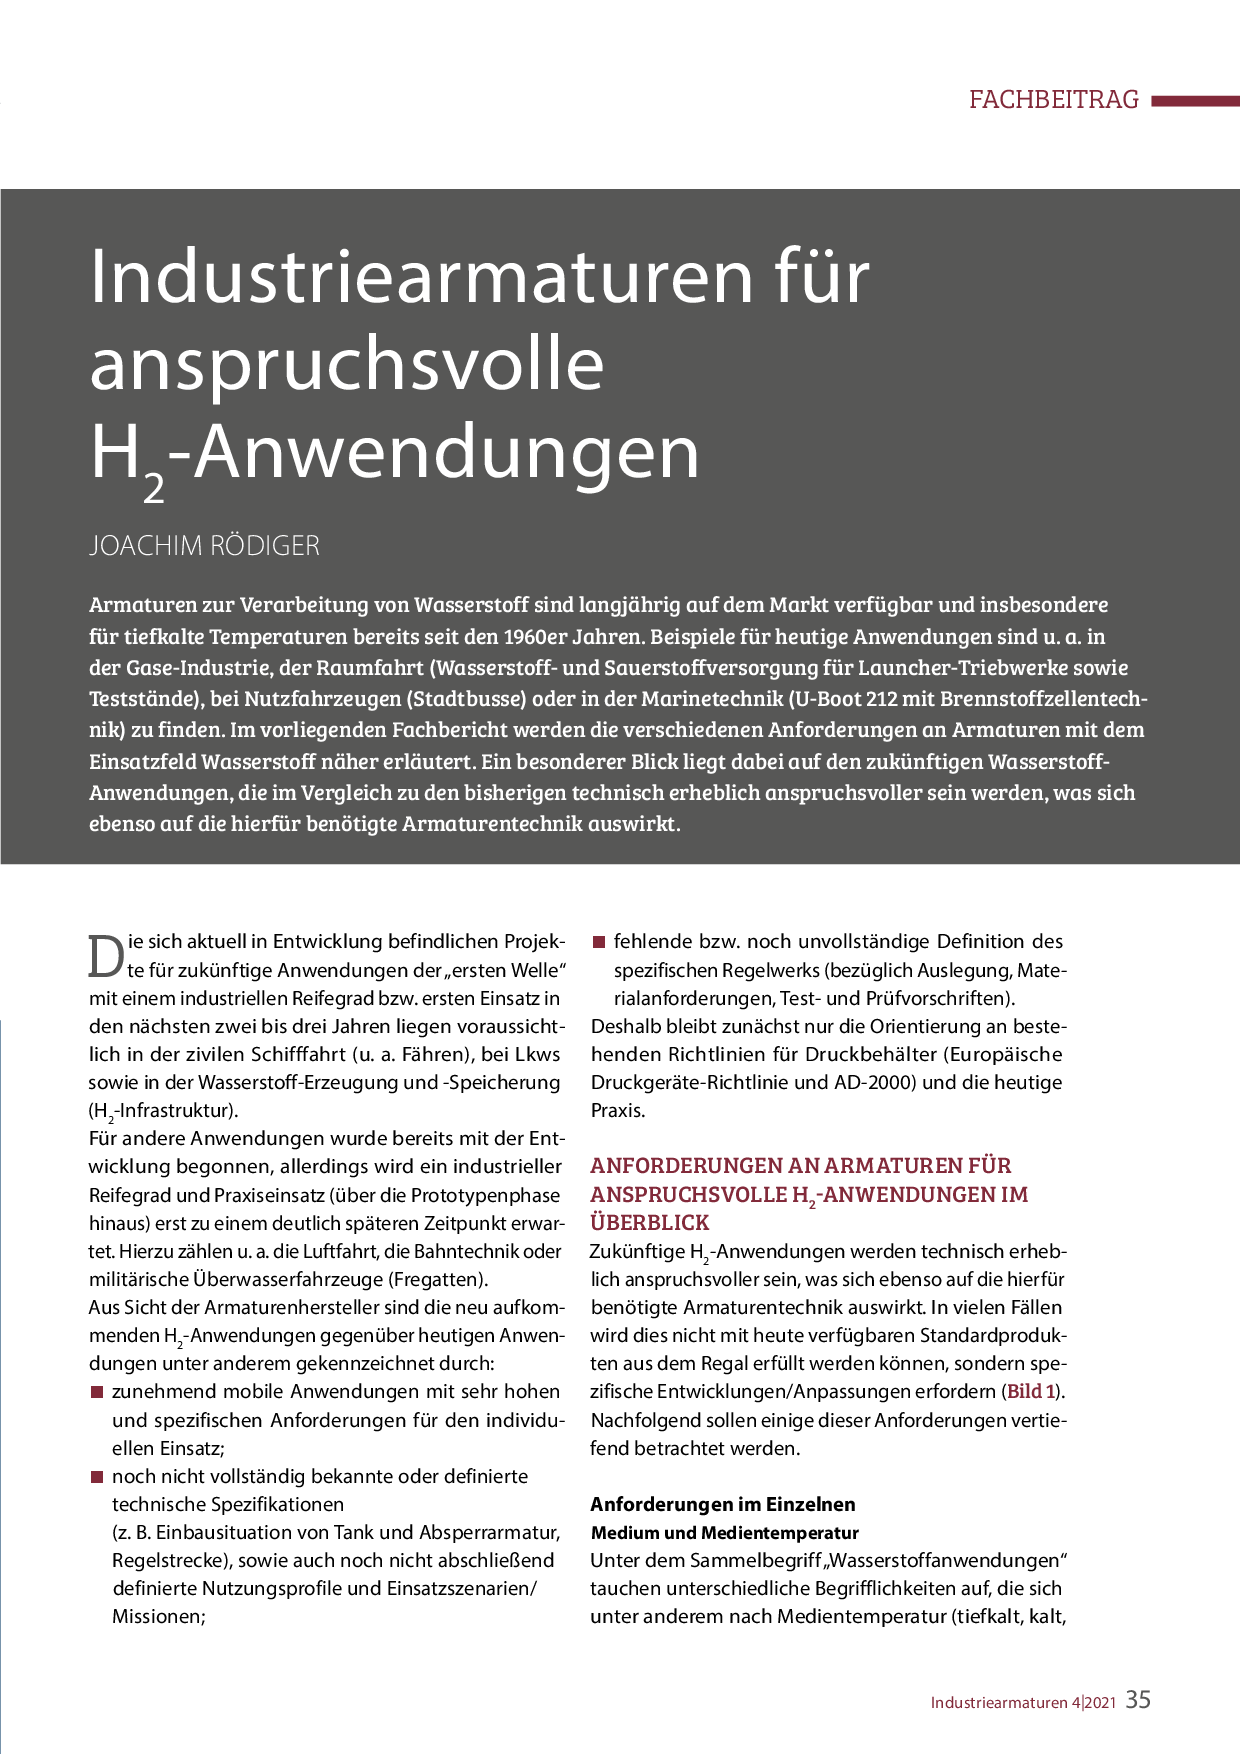 Industriearmaturen für anspruchsvolle H2-Anwendungen